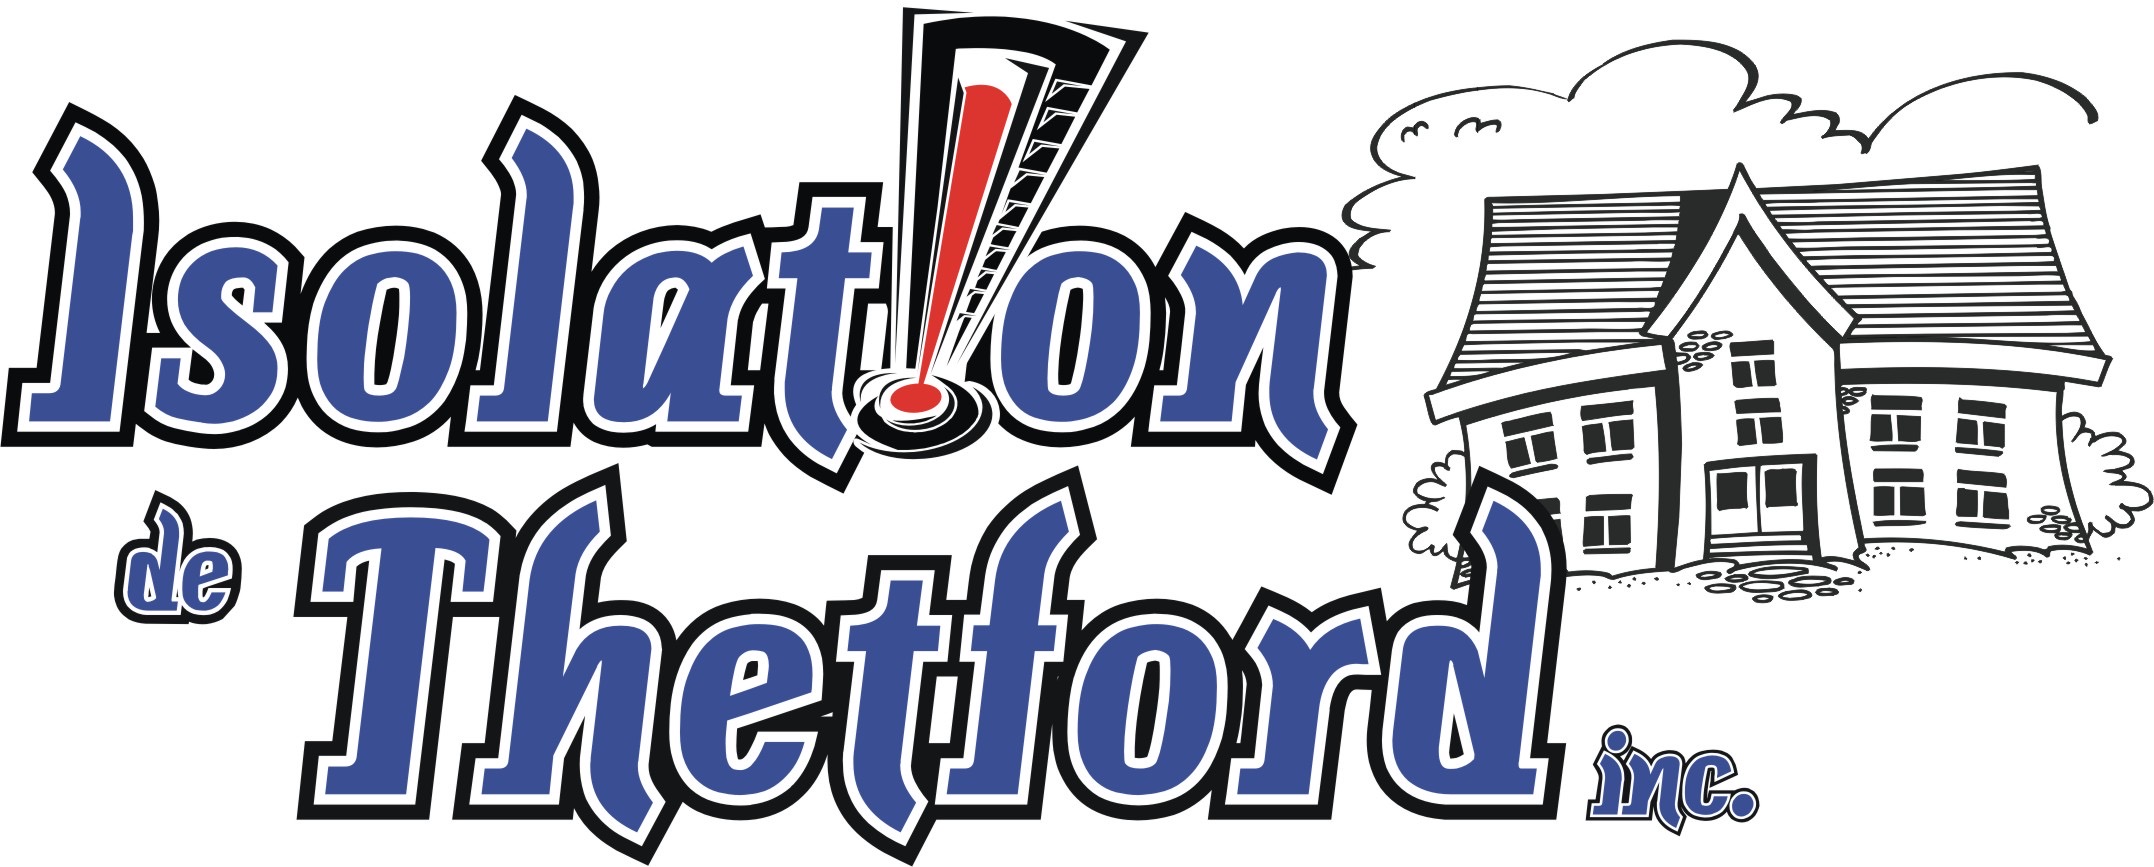 entrepreneur isolation thetford mines logo